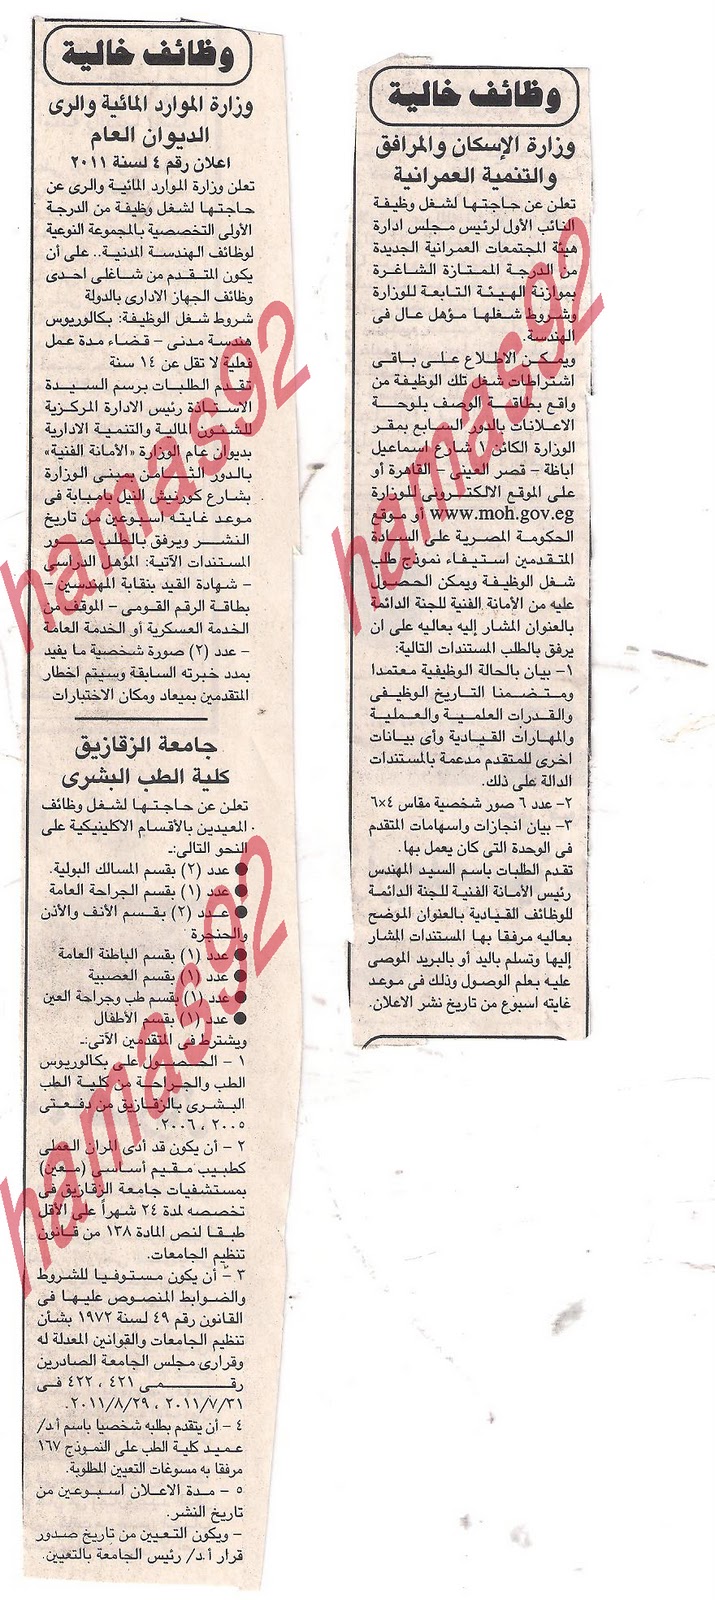 وظائف خالية من جريدة الجمهورية الاربعاء 28/9/2011 Picture+005